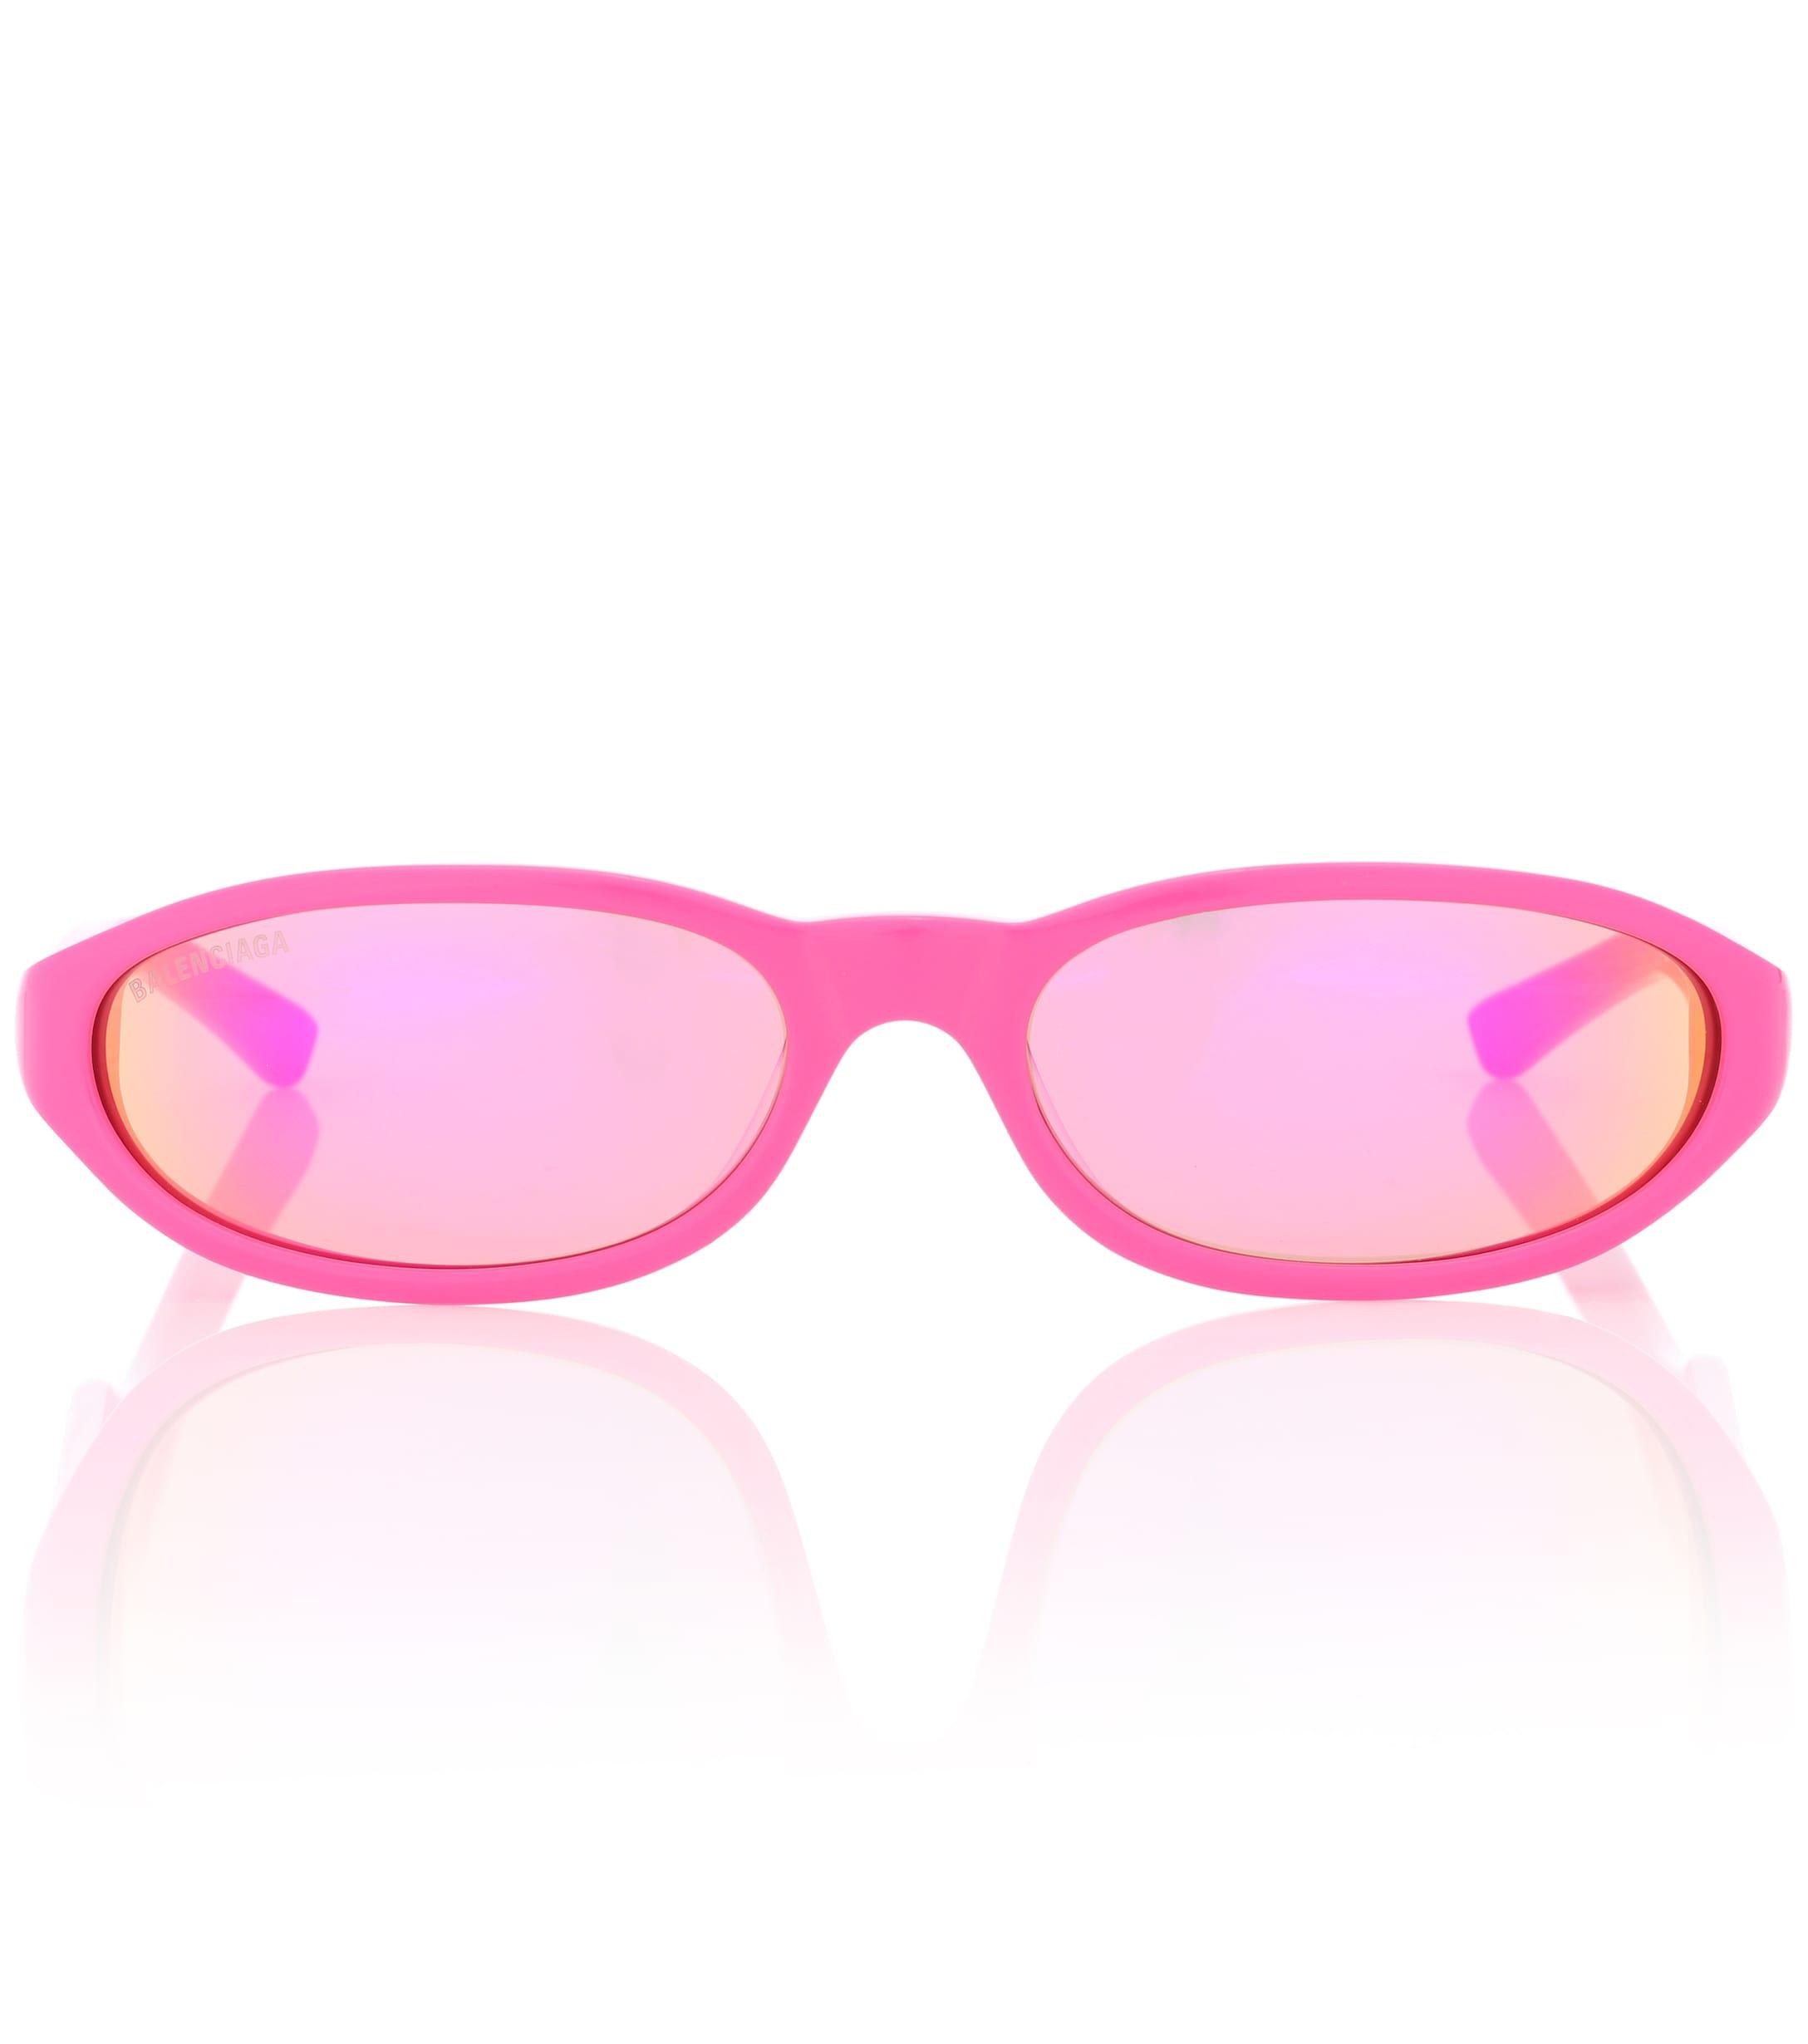 Розовые солнцезащитные очки купить. Balenciaga Neo очки. Balenciaga Pink очки. Розовые солнцезащитные очки. Детские розовые очки.